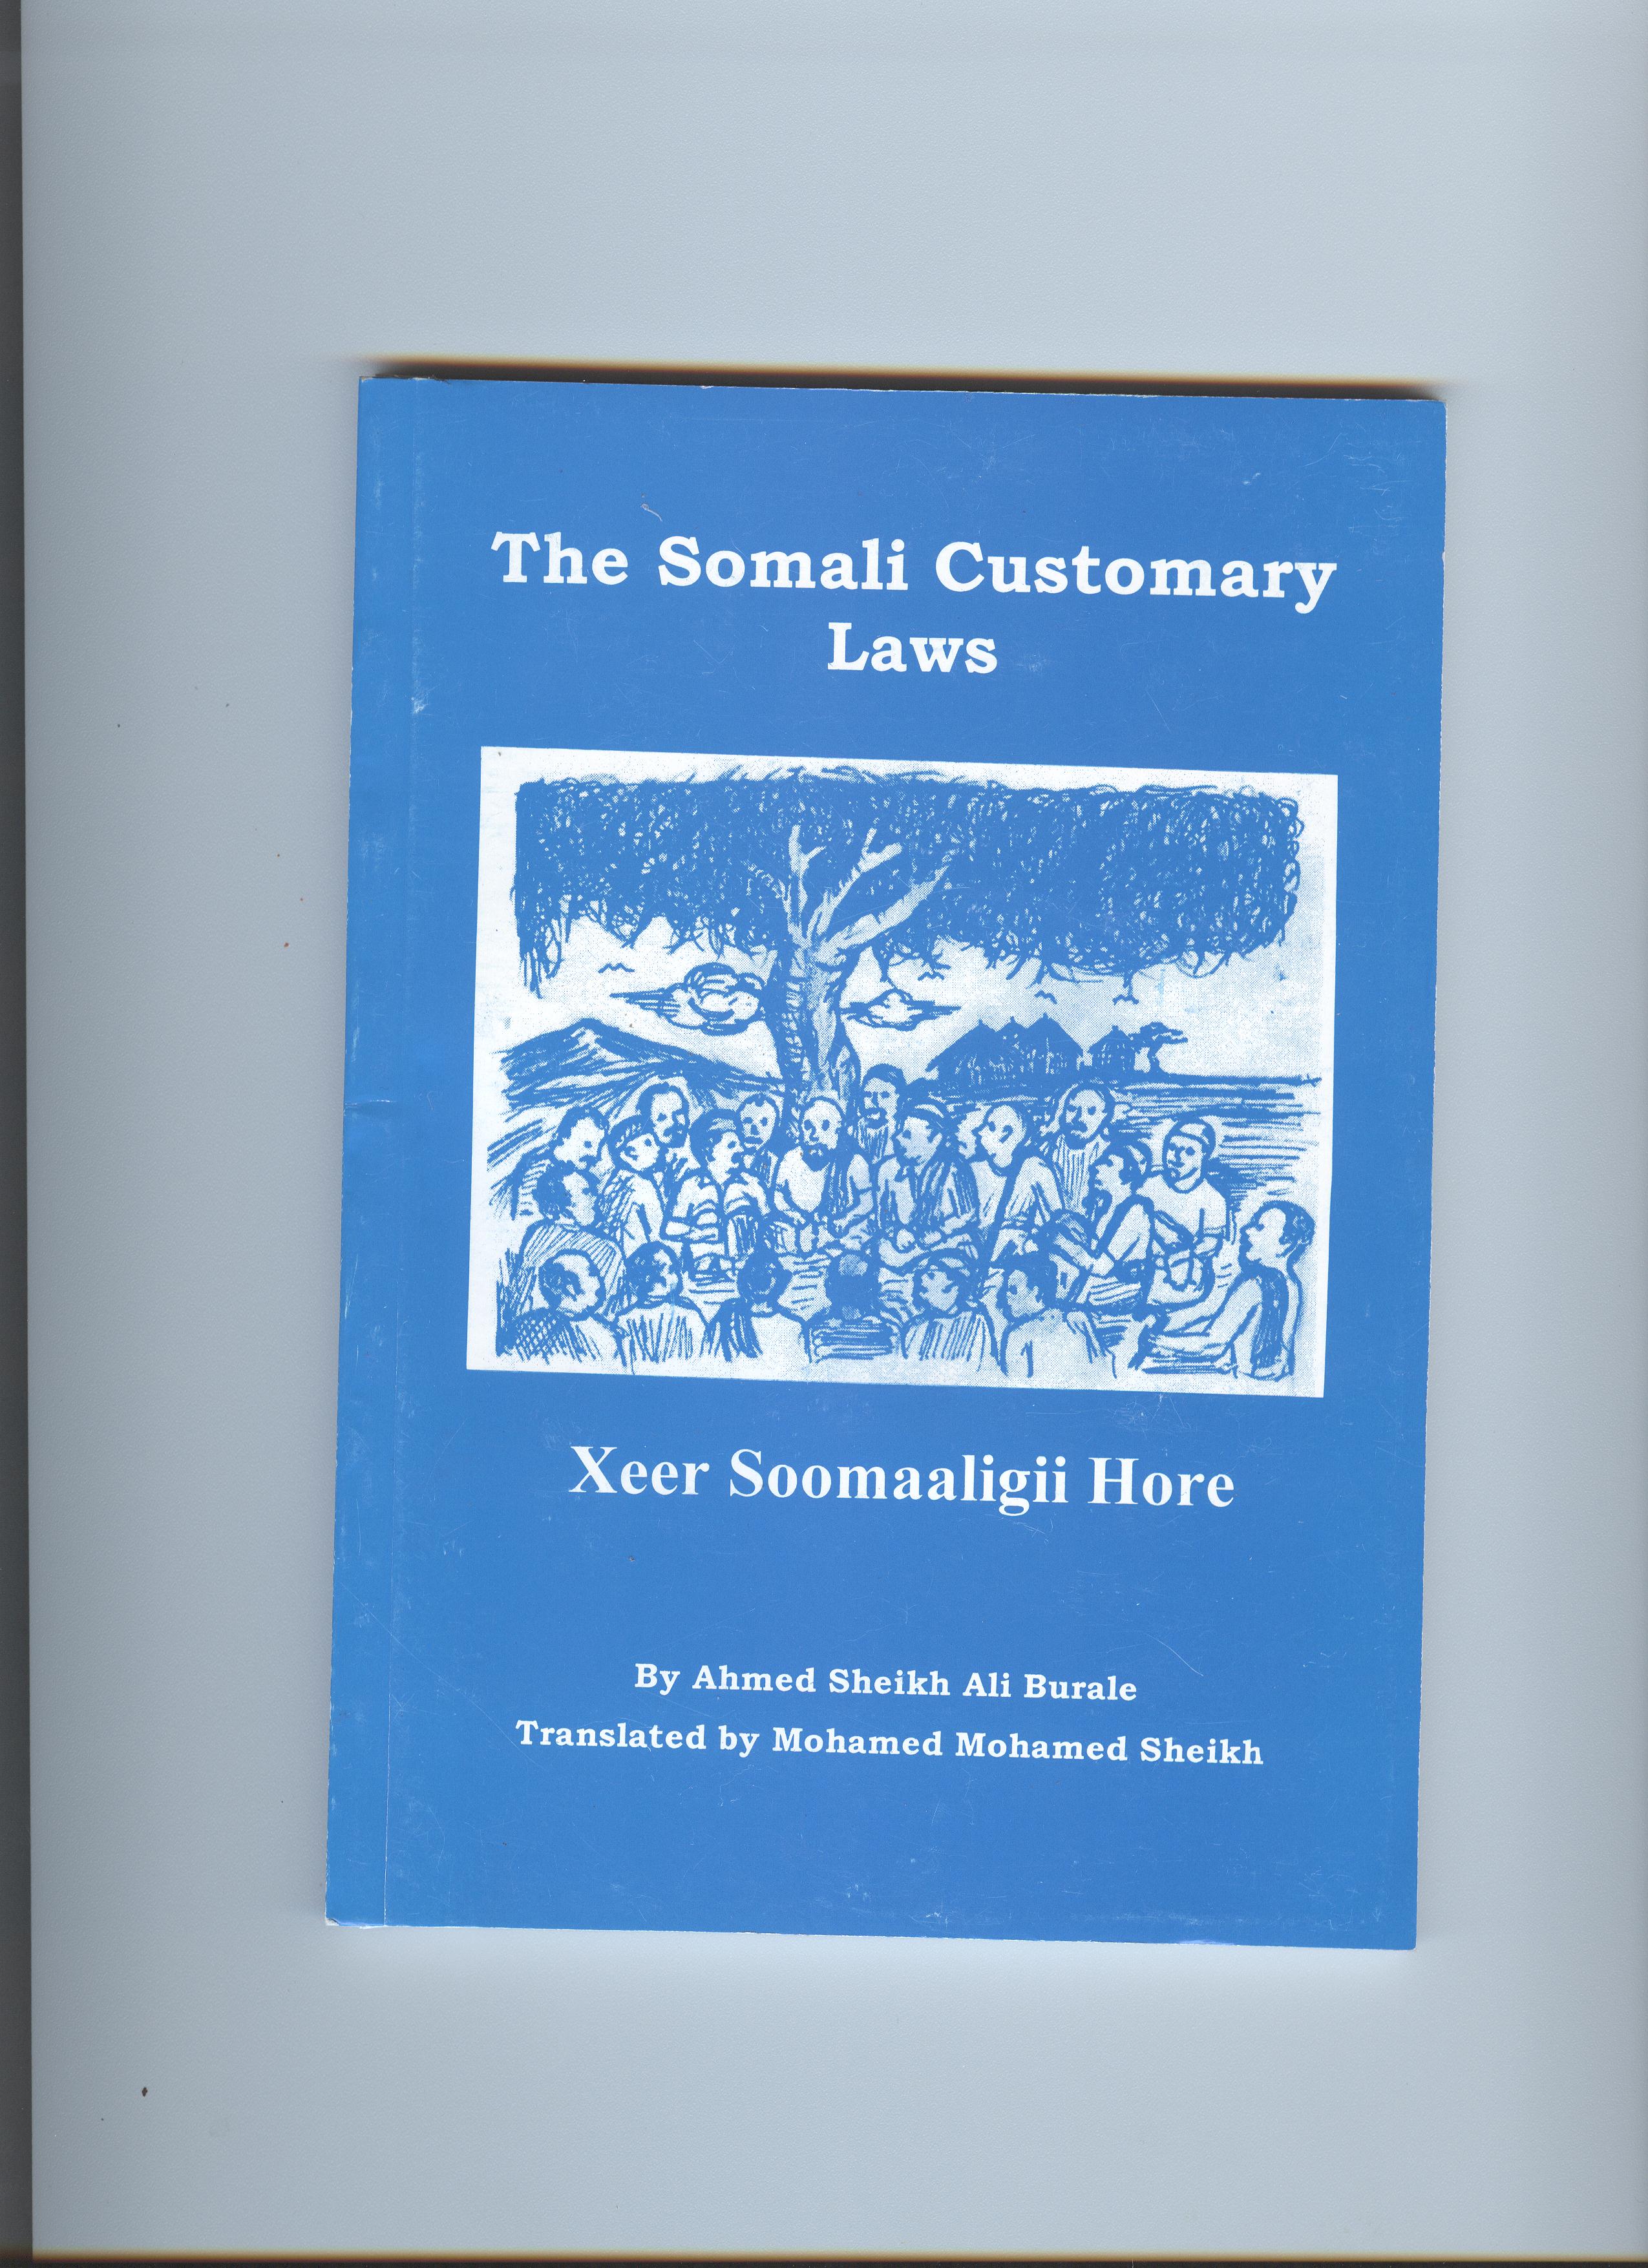 The Somali Customary Law